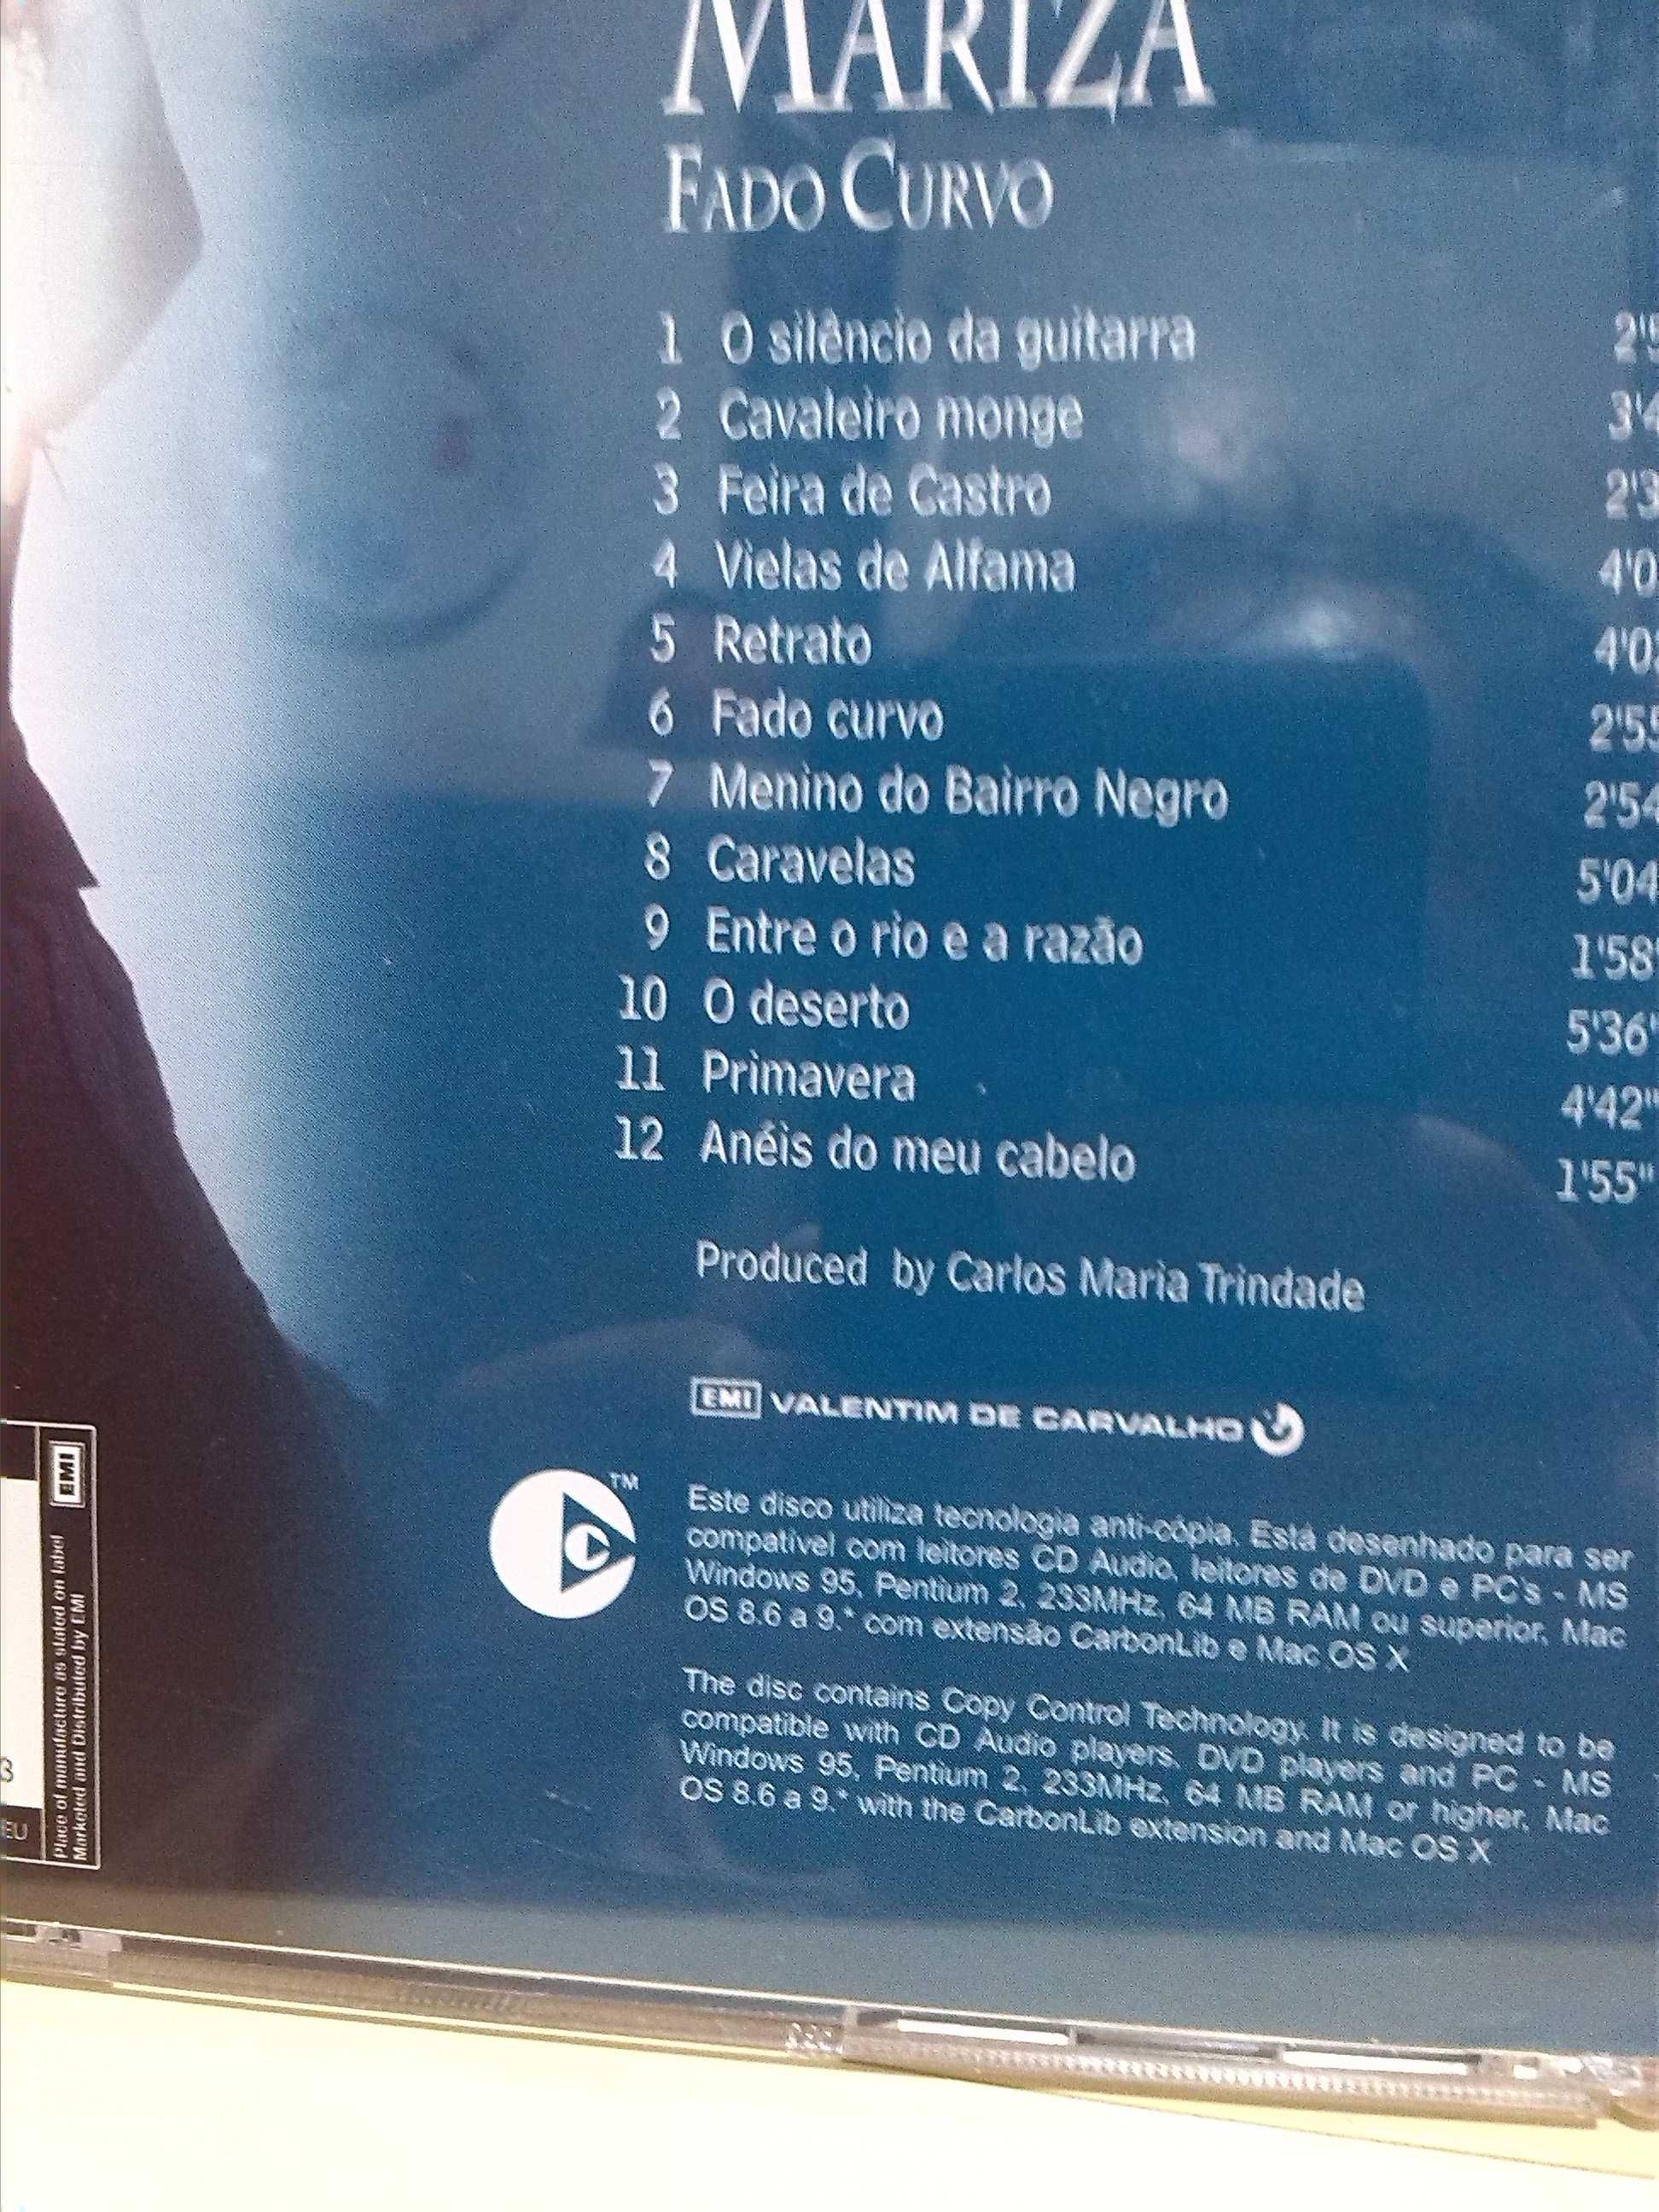 mariza fado curvo CD musica- portes grátis